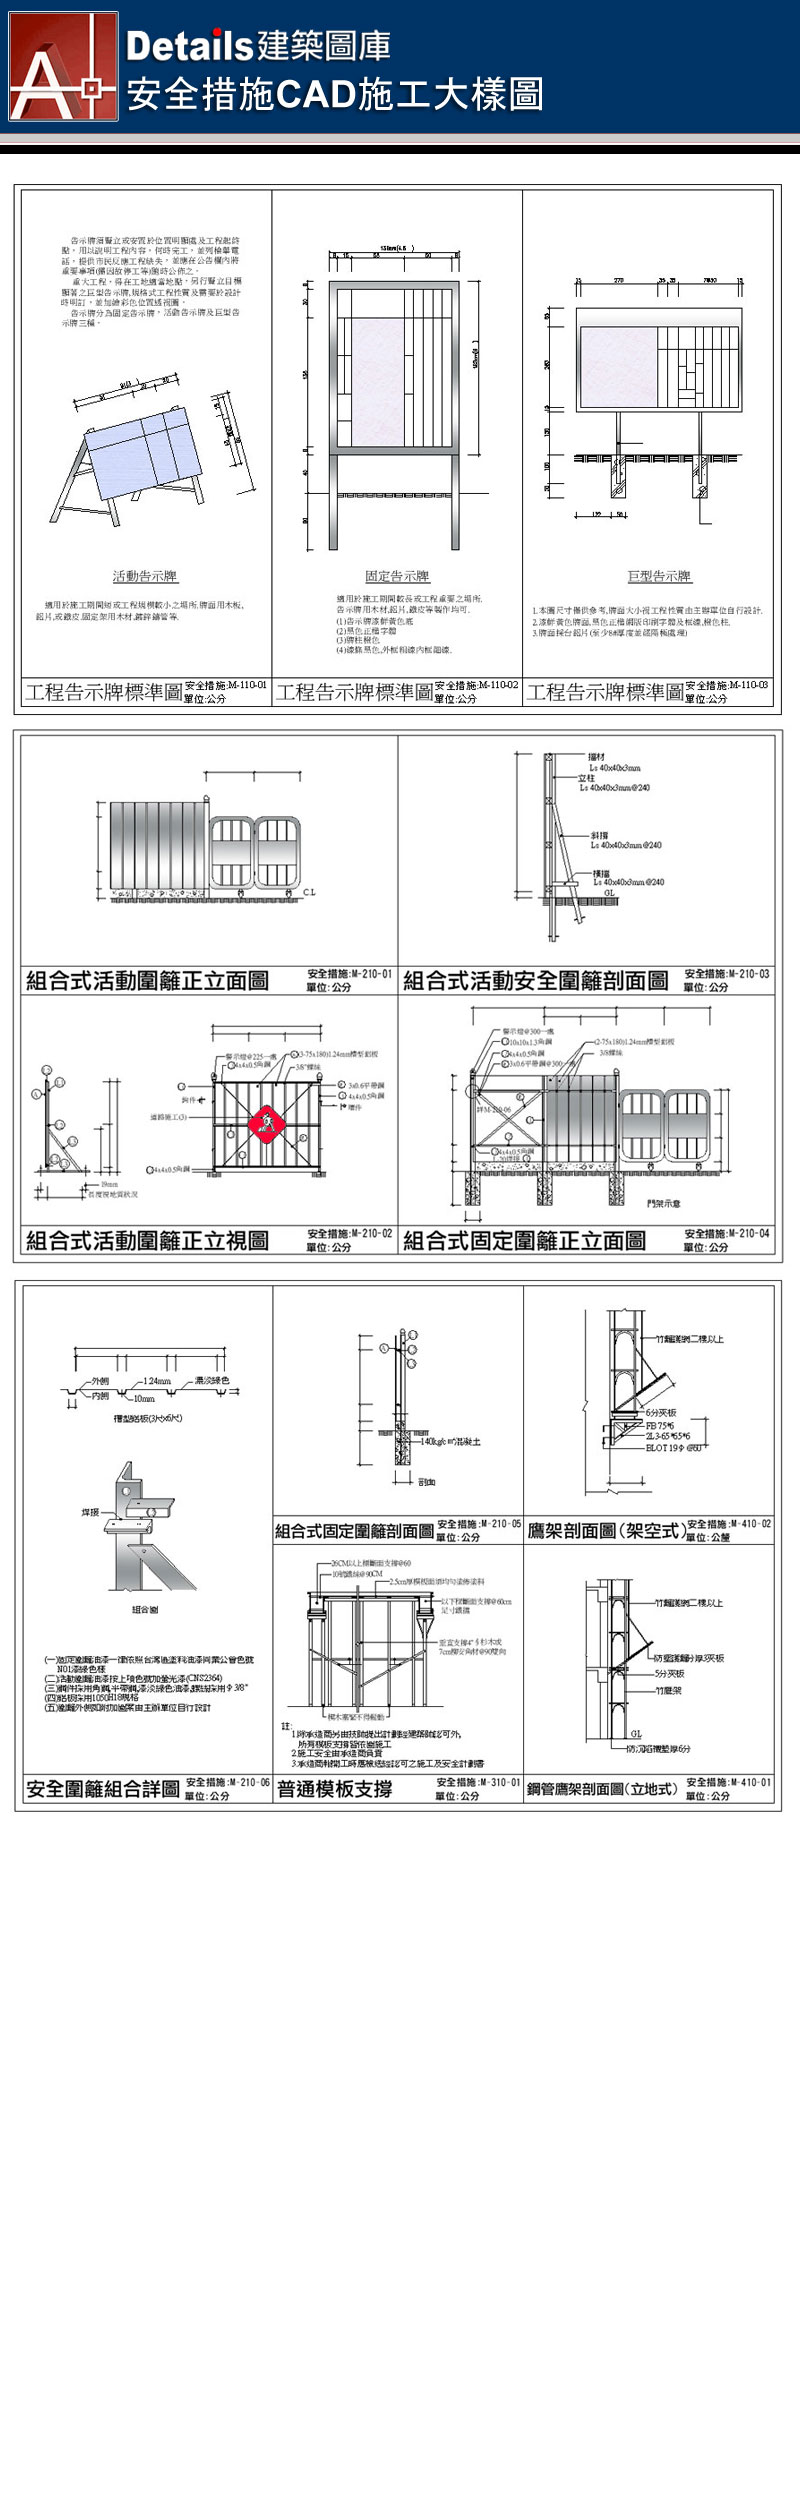 工程告示牌、組合式活動圍籬組合詳圖、安全圍籬、鷹架剖面圖、普通模版支撐、鋼管鷹架剖面圖